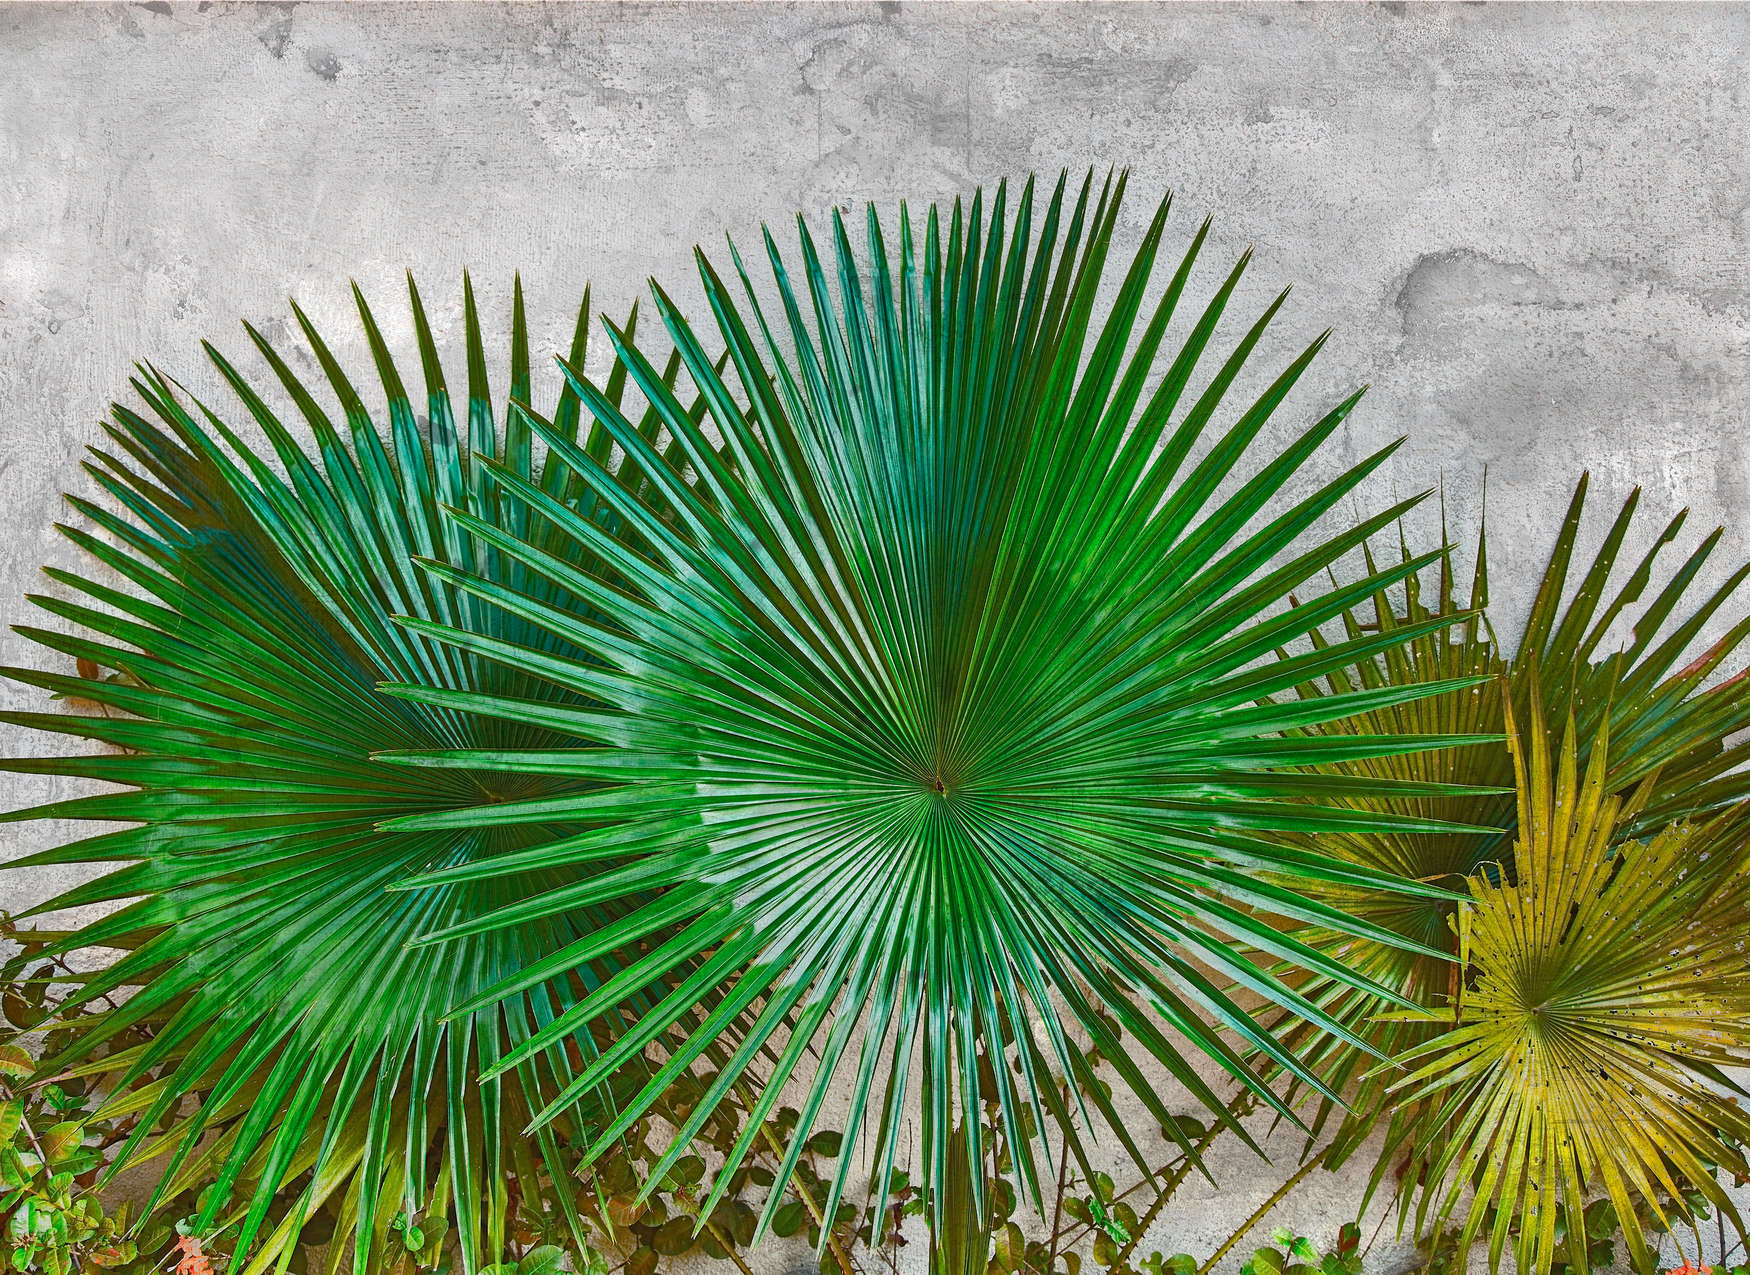             Fotomurali Foglie di agave davanti a muro di cemento - Verde, Grigio
        